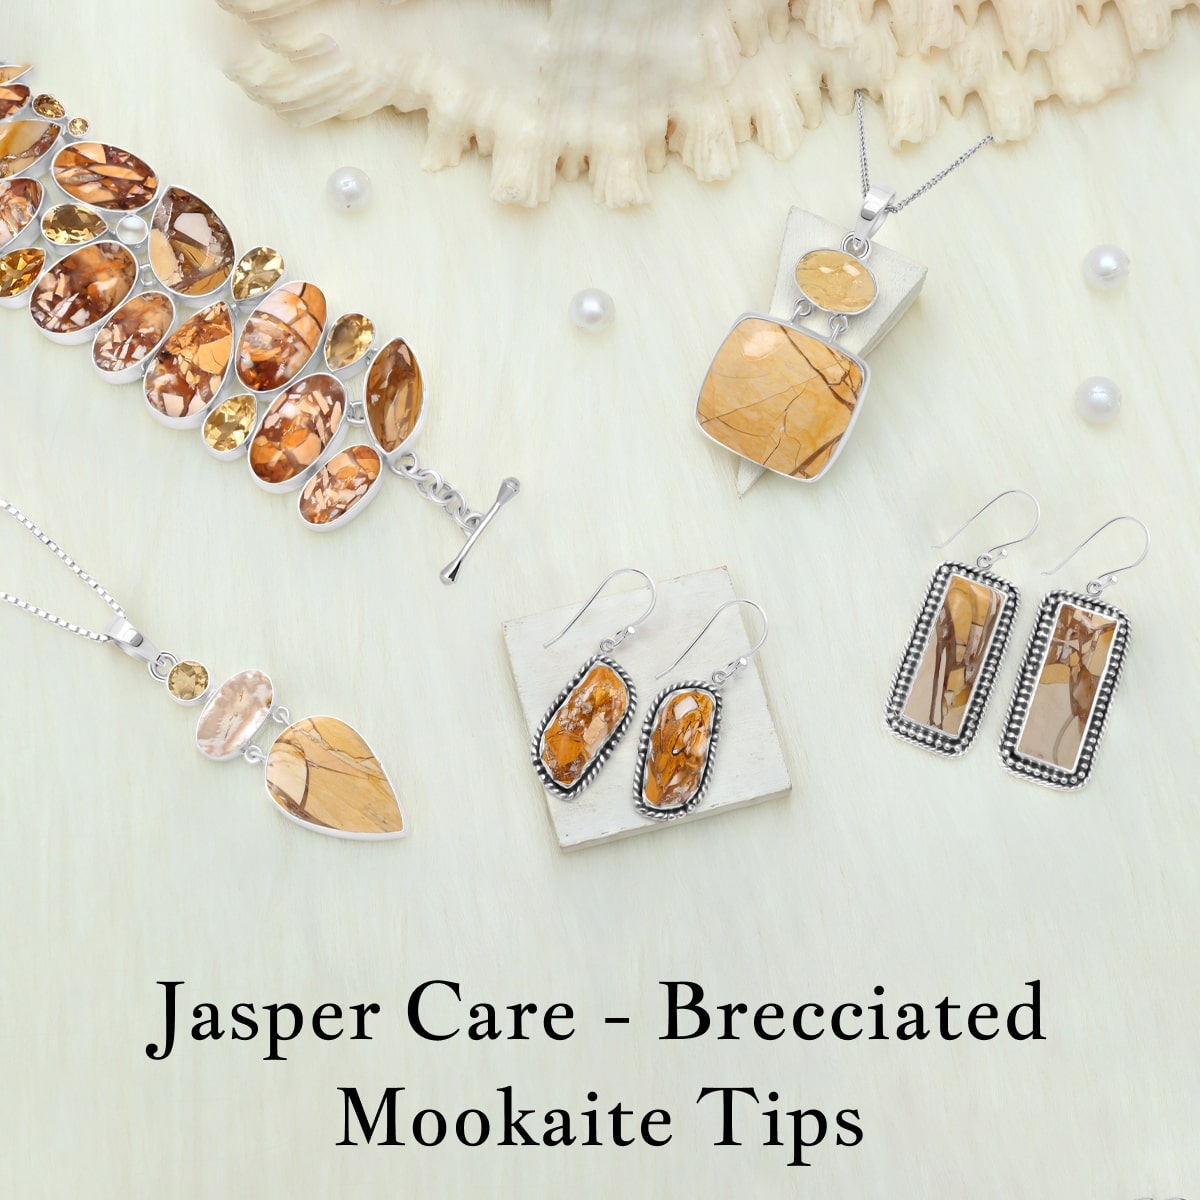 Proper Care Of Brecciated Mookaite Jasper